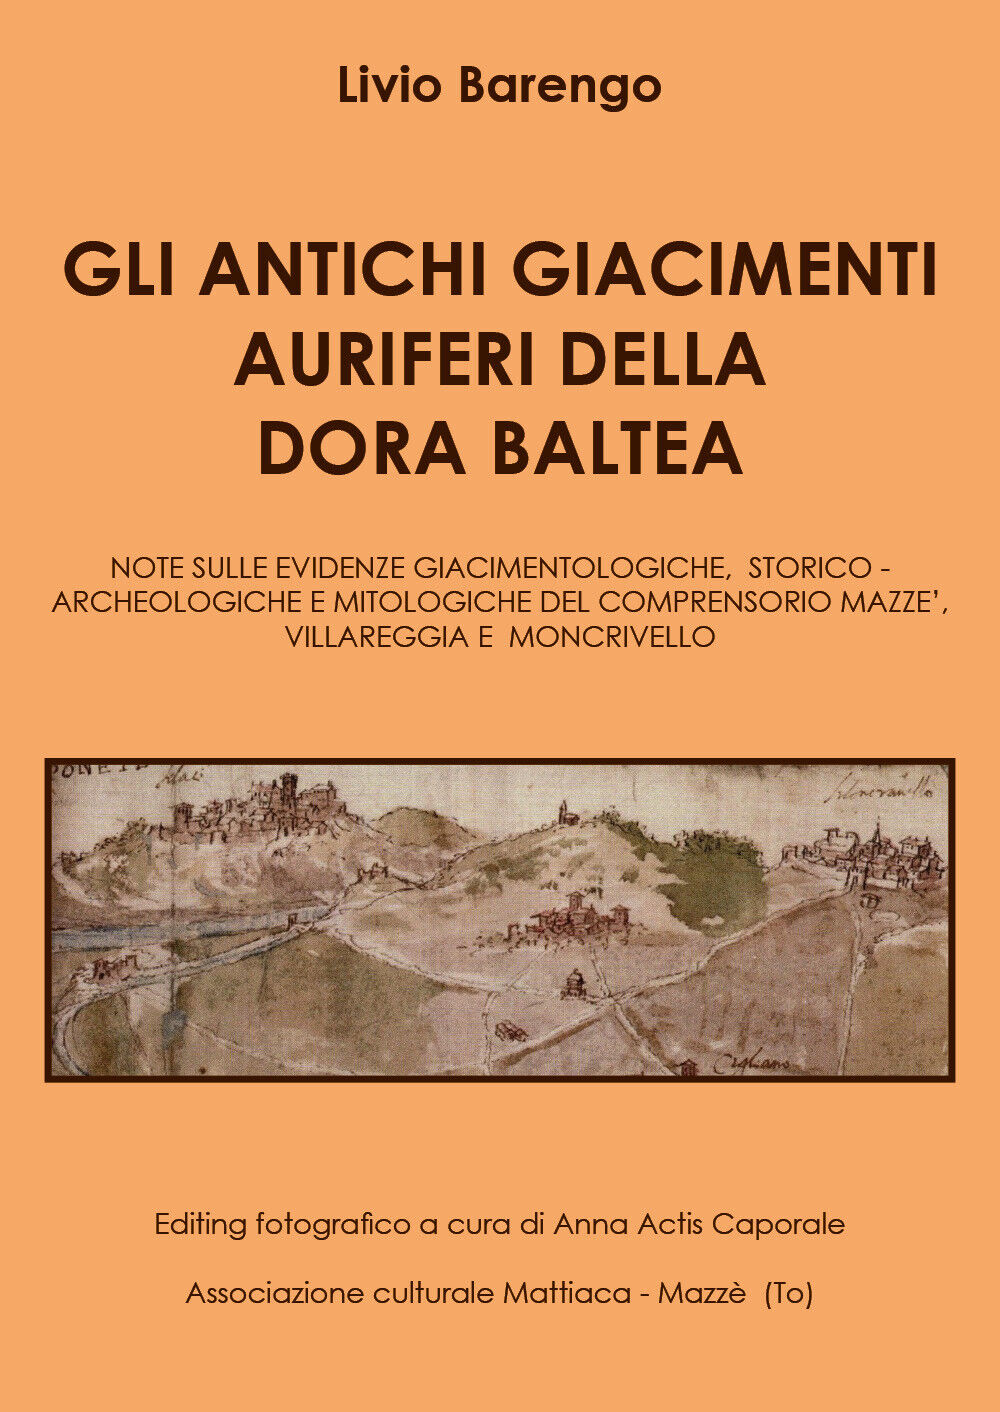 Gli antichi giacimenti auriferi sulla Dora Baltea di Livio Barengo,  2020,  Youc